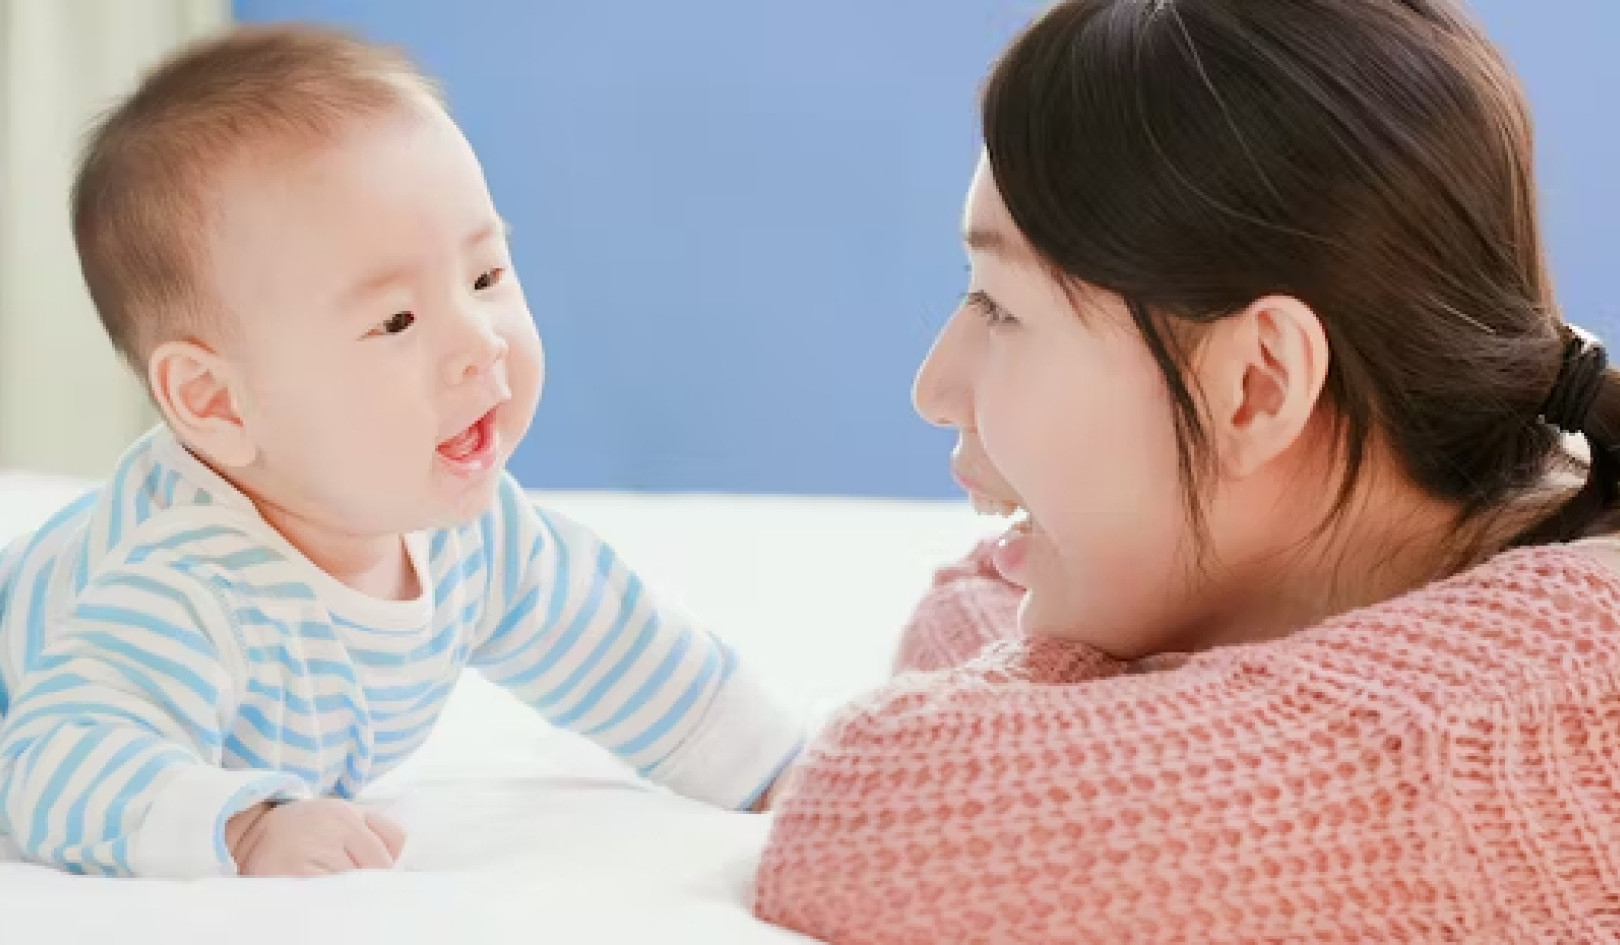 Hablar con los bebés puede contribuir al desarrollo del cerebro: aquí se explica cómo hacerlo